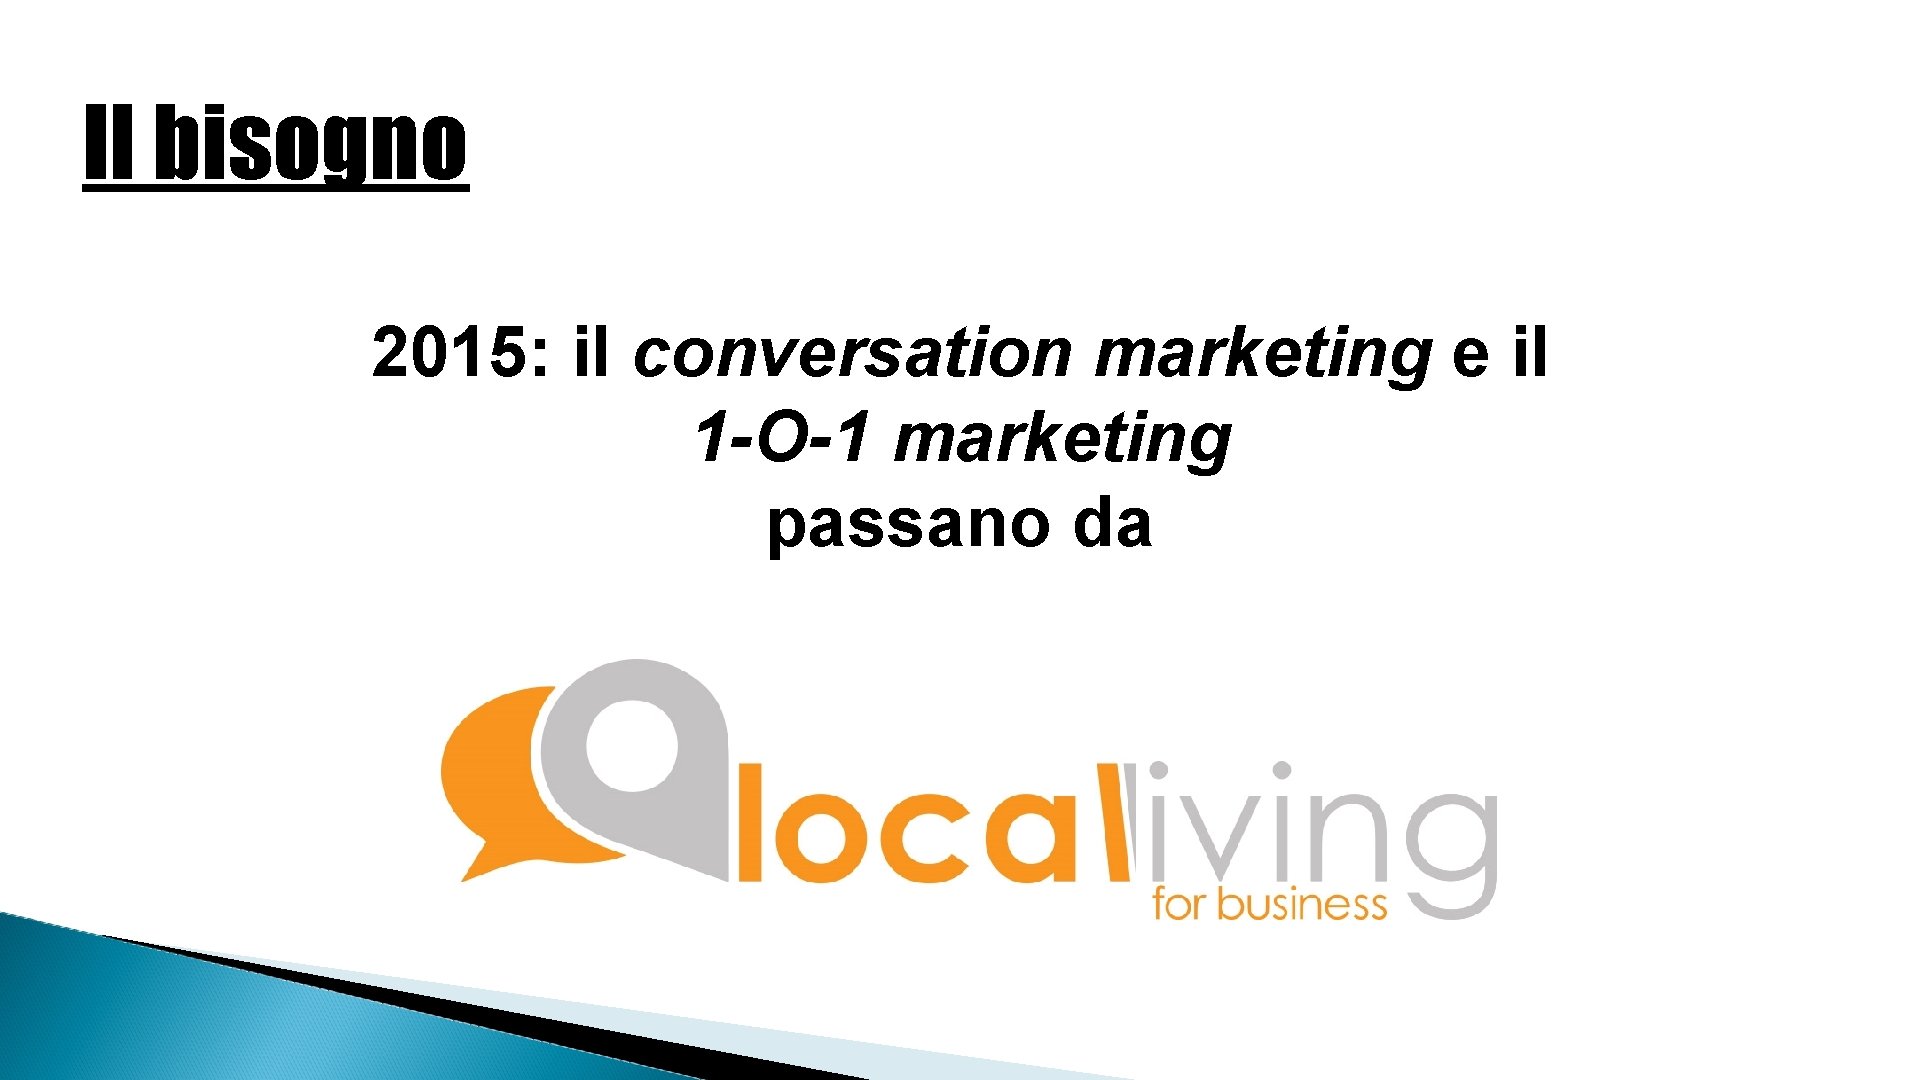 Il bisogno 2015: il conversation marketing e il 1 -O-1 marketing passano da 